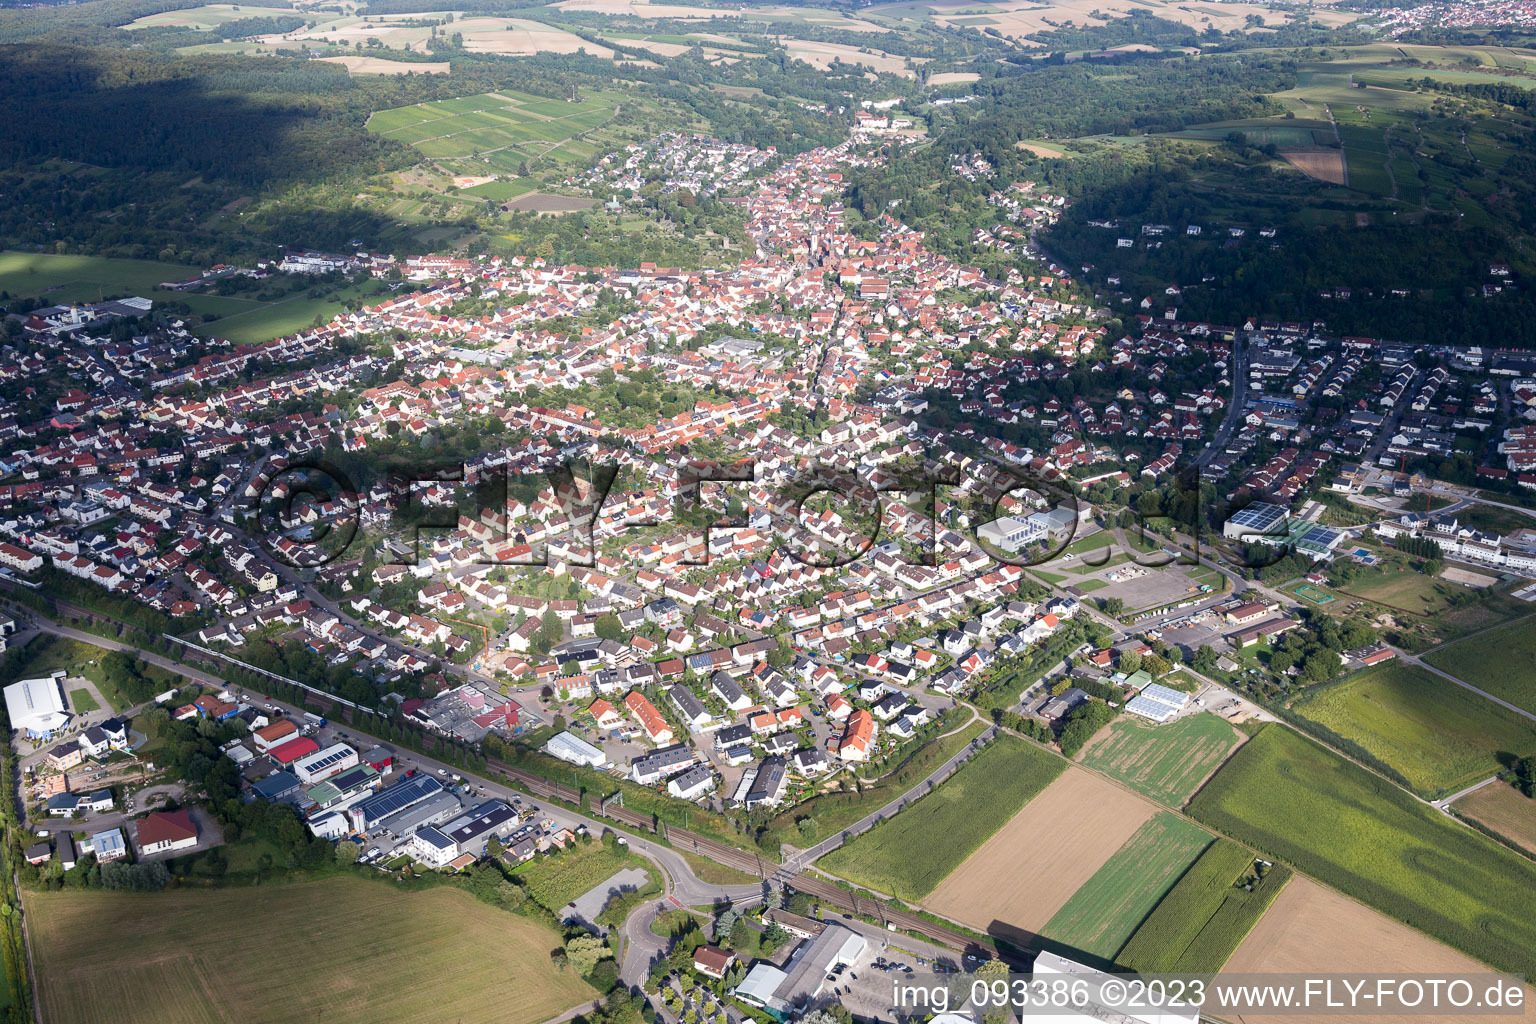 Weingarten im Bundesland Baden-Württemberg, Deutschland von einer Drohne aus